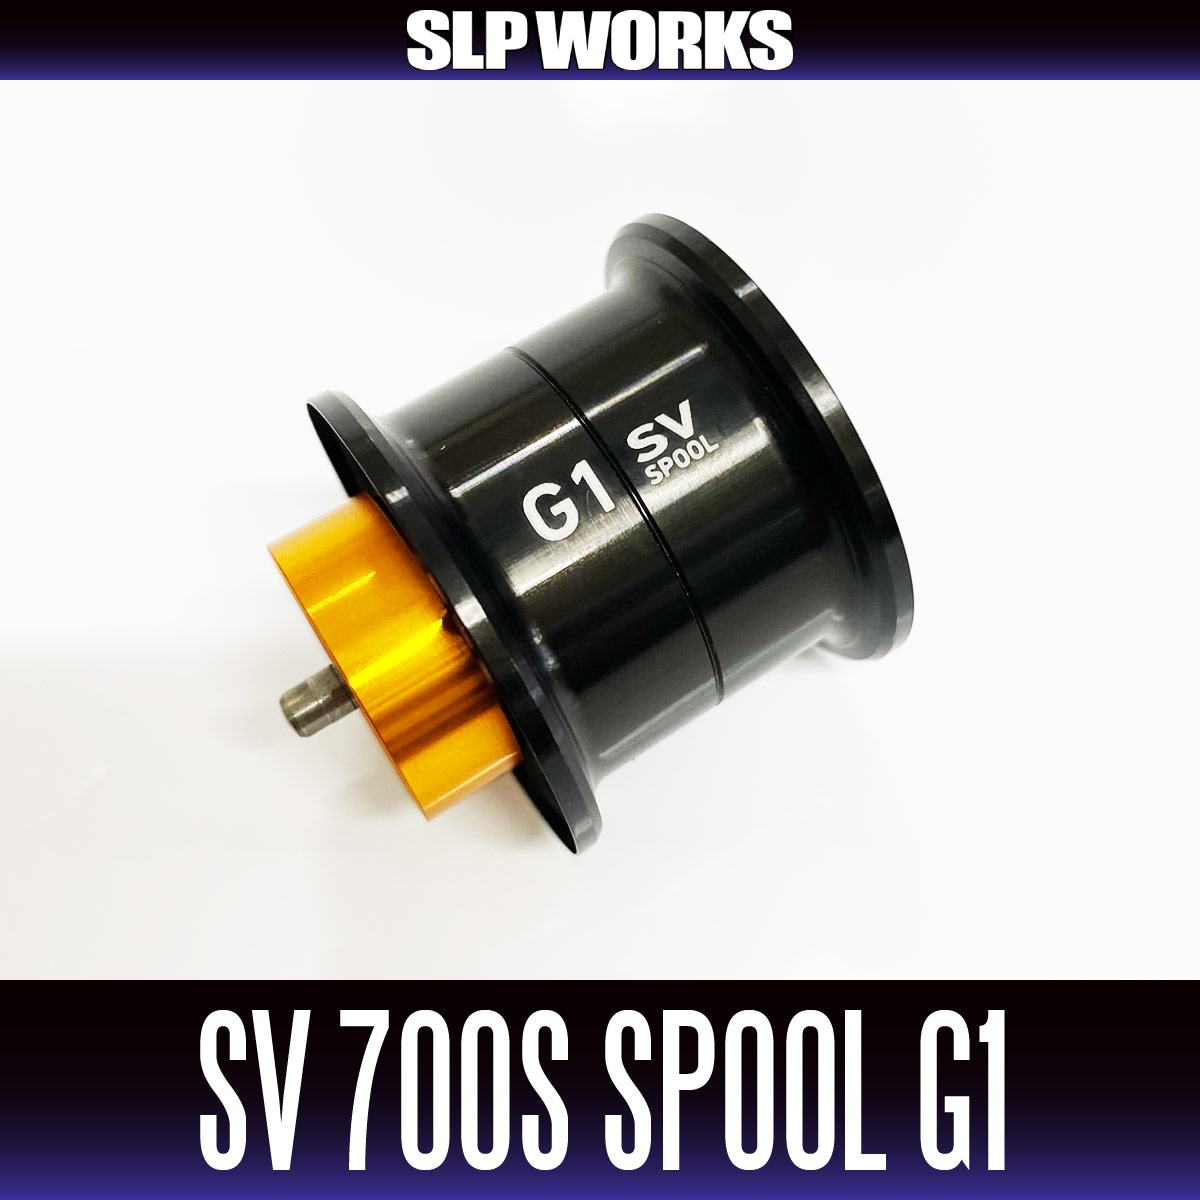 ●ダイワ SLPW(ワークス)　RCSB(ベイトキャスティング) CT SV700スプール G1(オレンジ) 